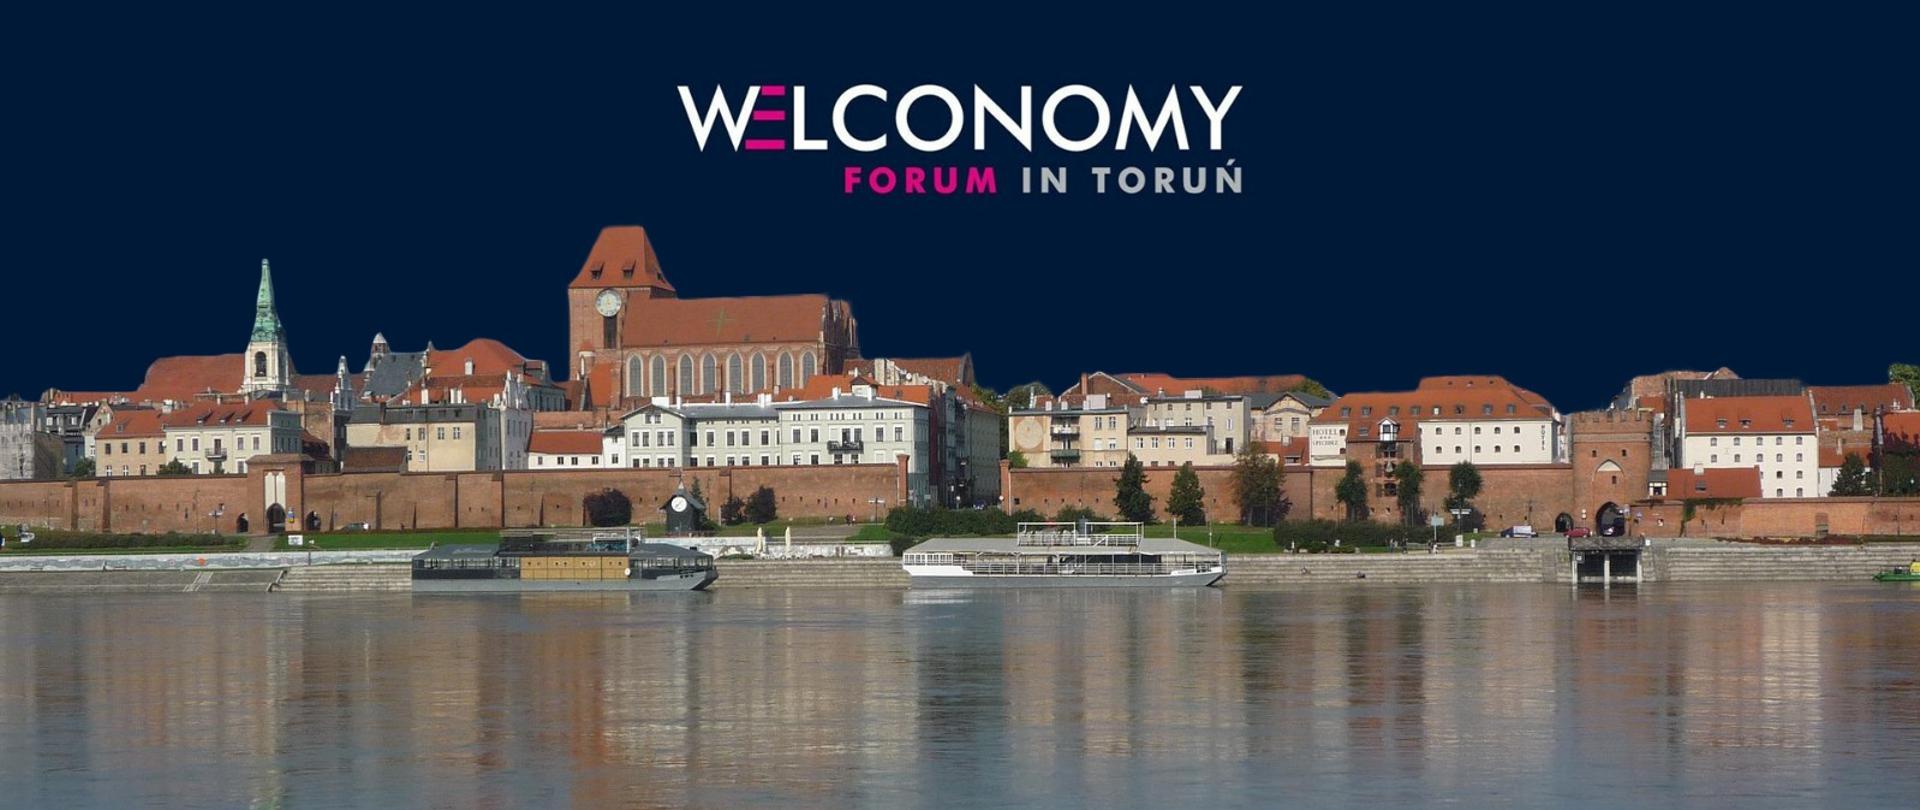 Zaproszenie na Forum Welconomy in Toruń. Na grafice znajduje się panorama Torunia - Wisła, barki, Stare miasto. 